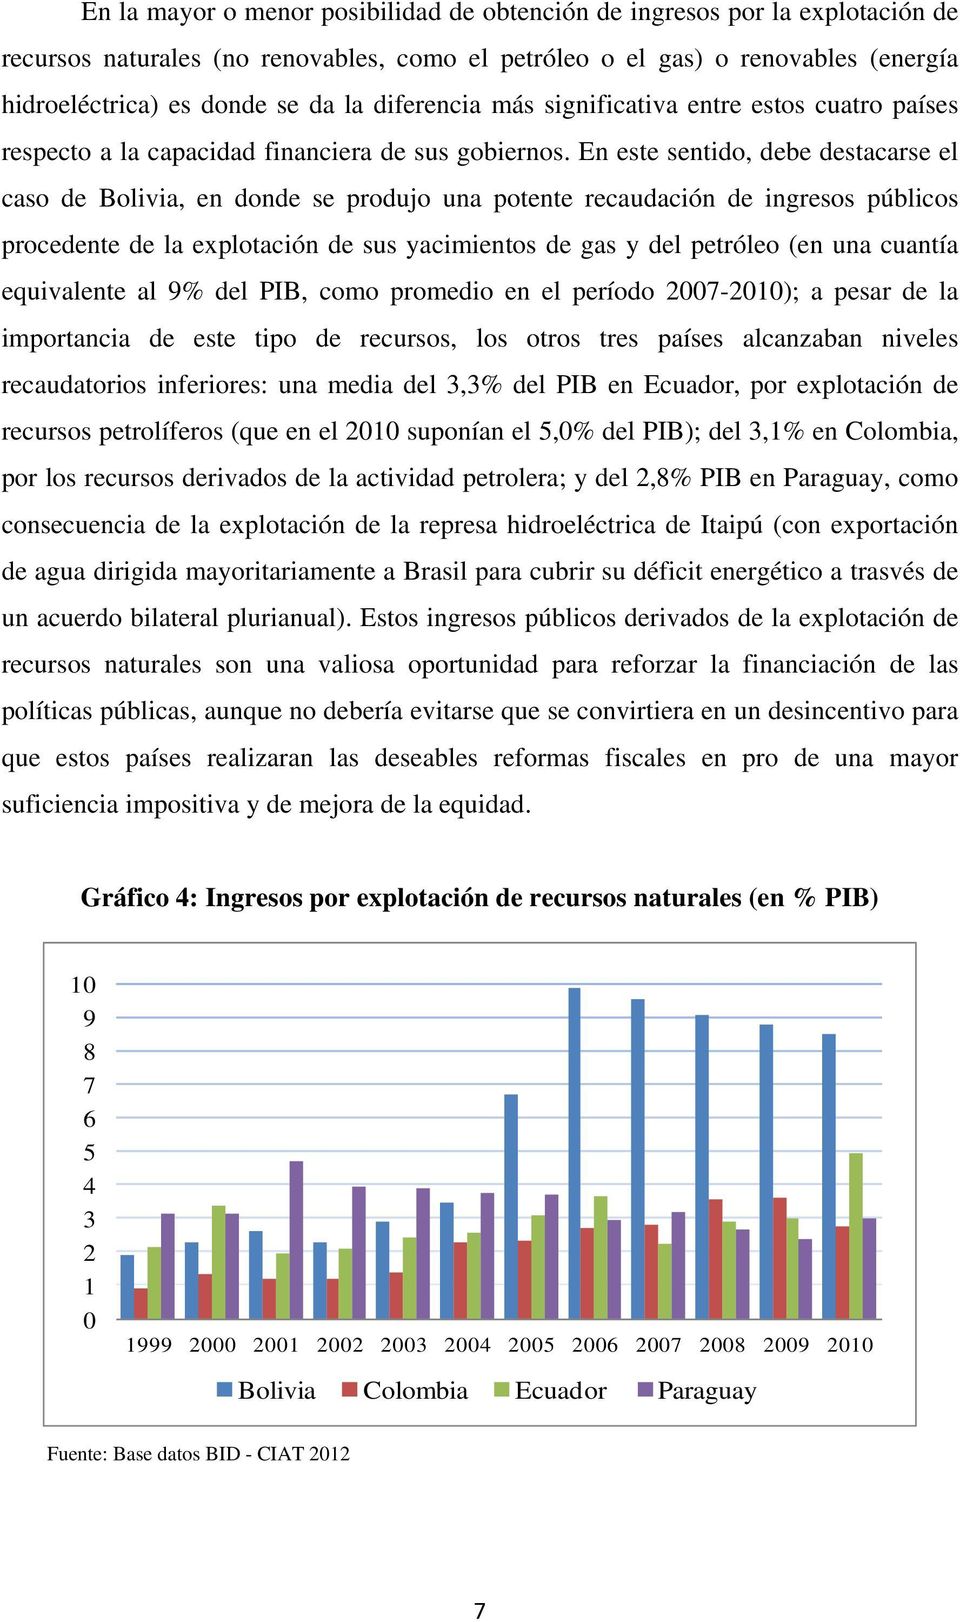 En este sentido, debe destacarse el caso de Bolivia, en donde se produjo una potente recaudación de ingresos públicos procedente de la explotación de sus yacimientos de gas y del petróleo (en una